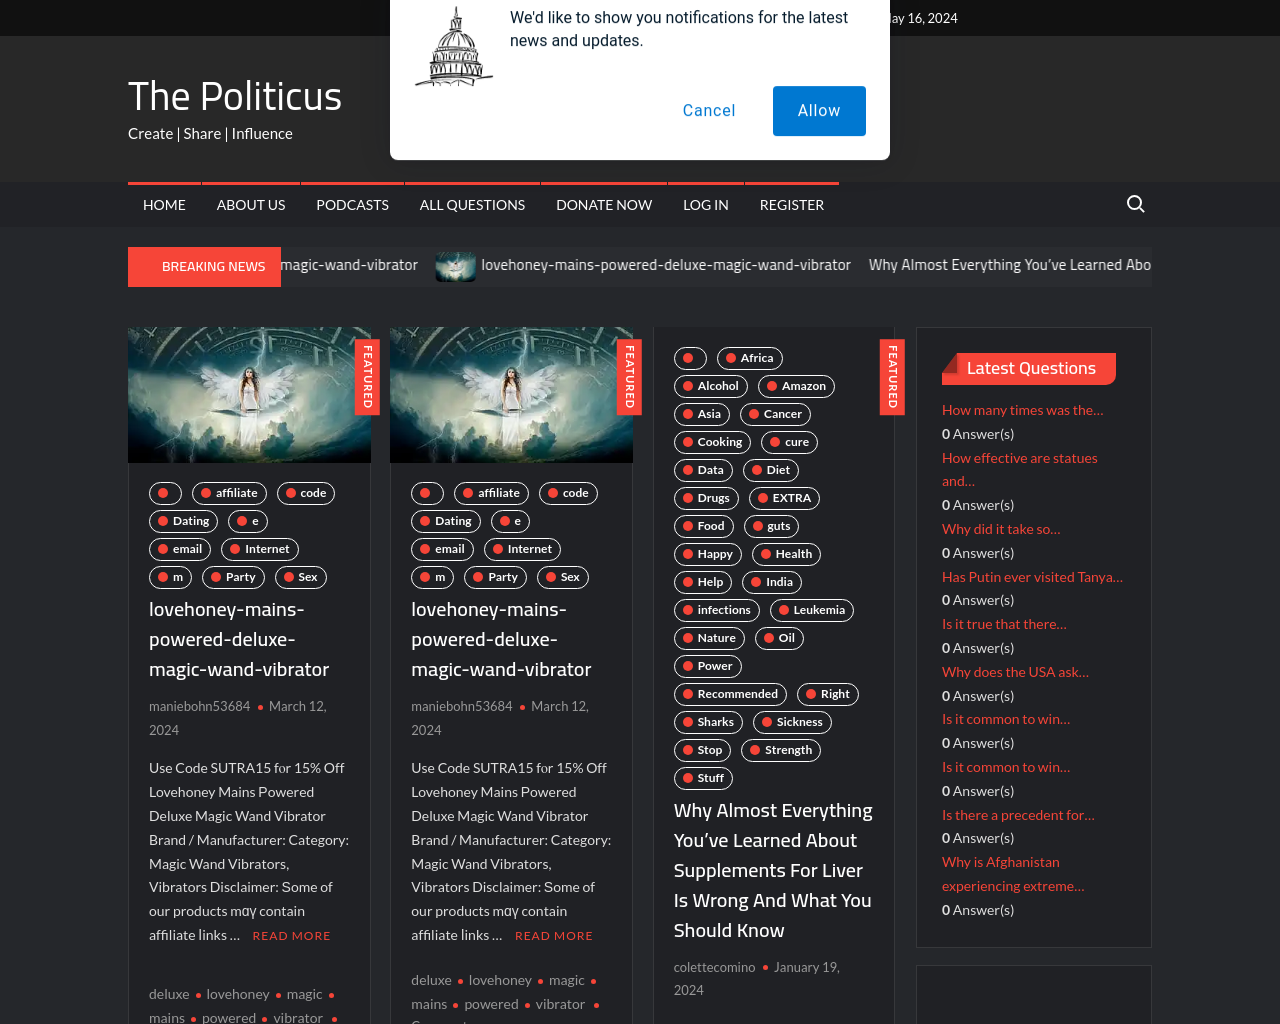 thepoliticus.com